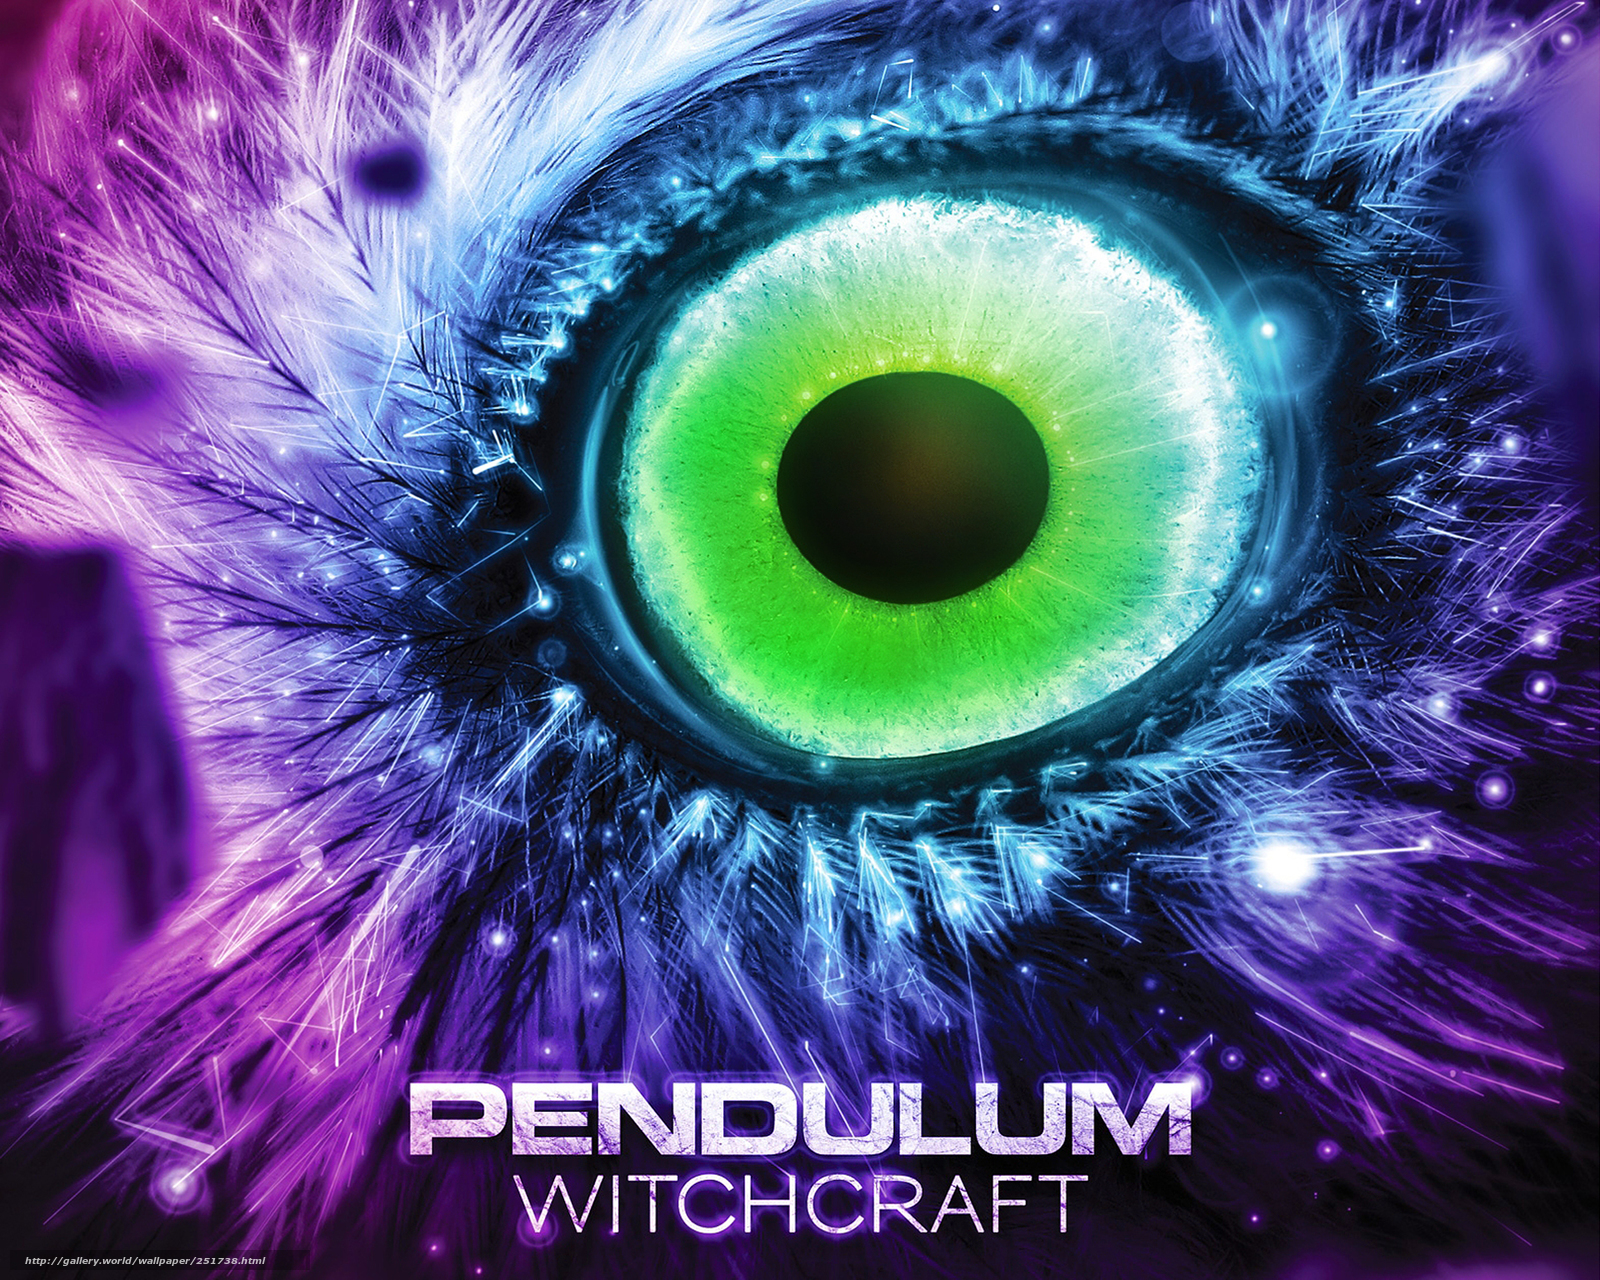 Download wallpaper pendulum witchcraft eye desktop wallpaper in 1600x1280